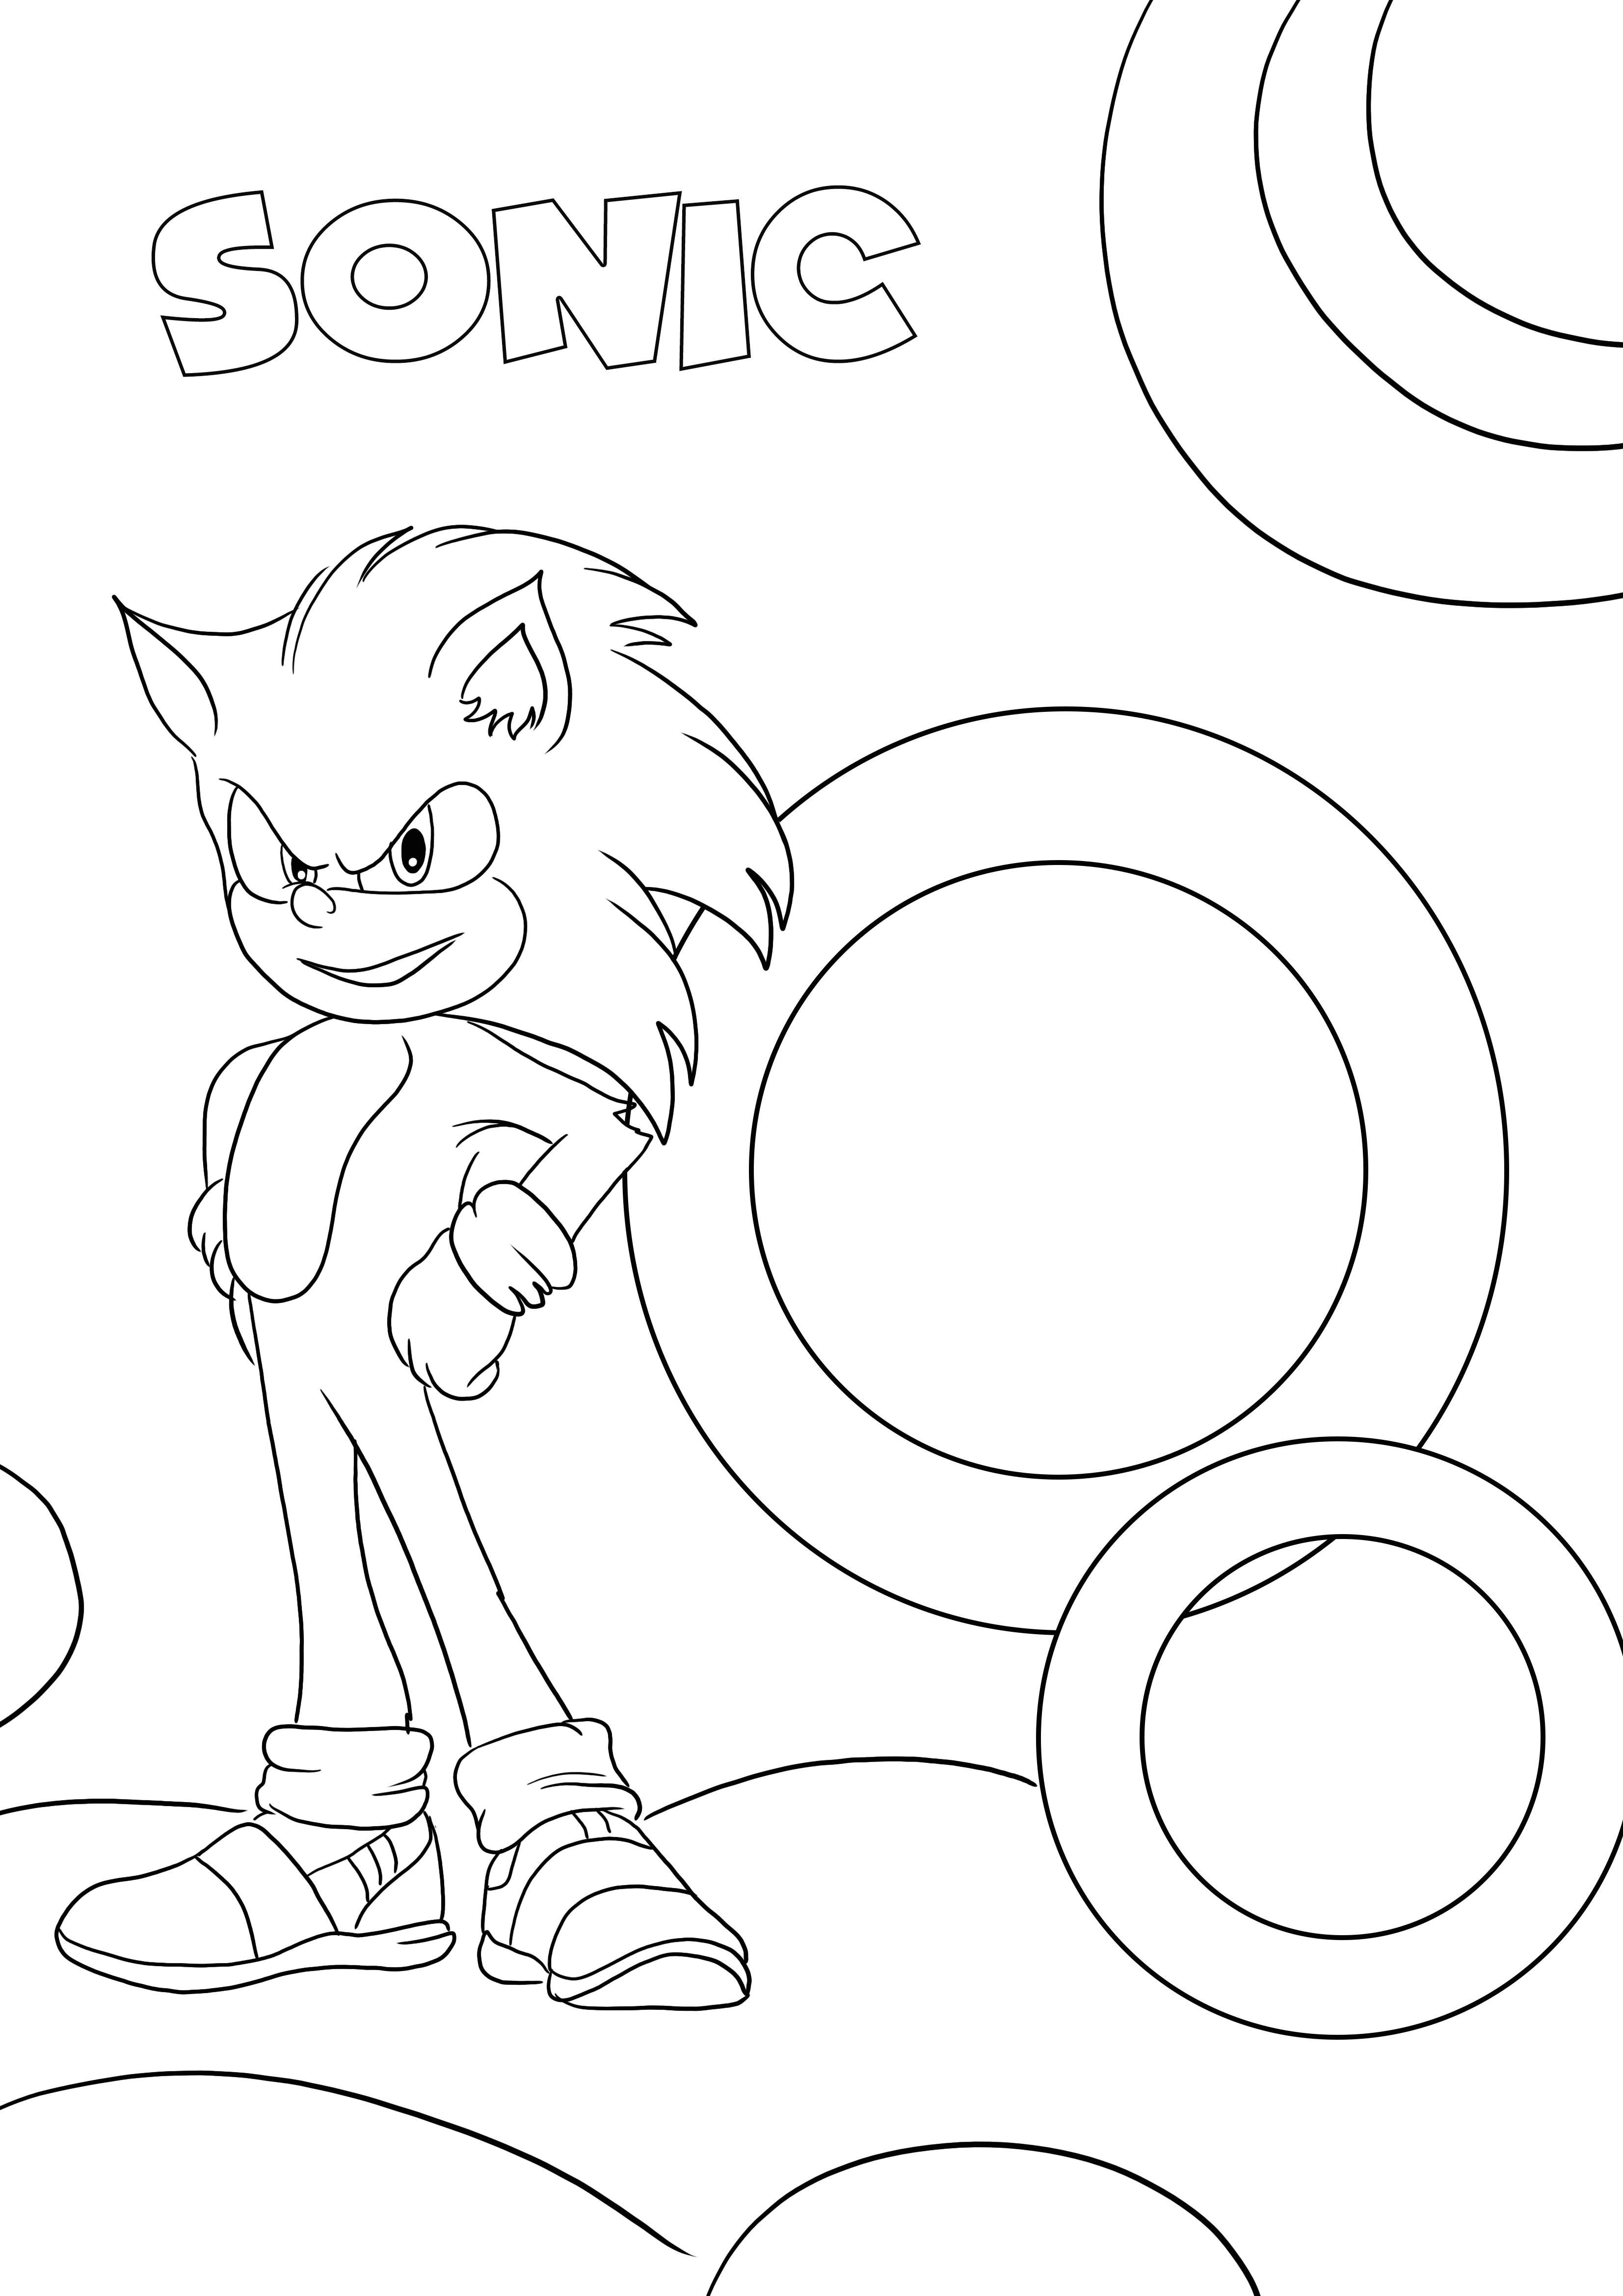 Personnage Sonic préféré pour impression et coloriage gratuits